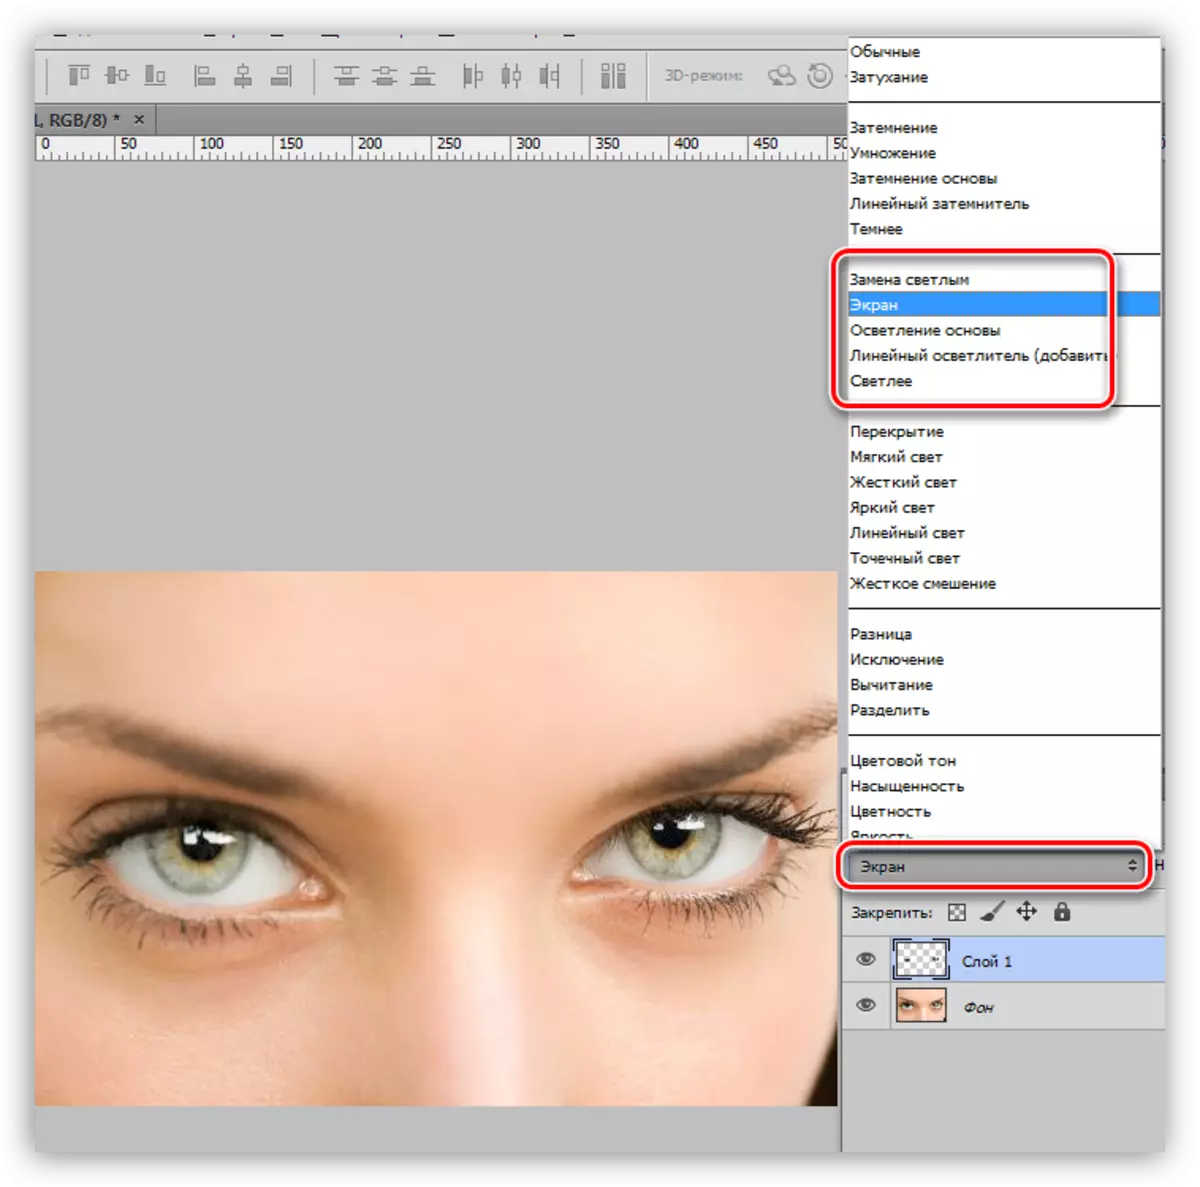 Photoshop- ում աչքի ընտրություն Երբ Photoshop- ում աչքը ընտրելու ժամանակ էկրանի վրա գտնվող ծիածանի կեղեւով մի շերտի փոխելը